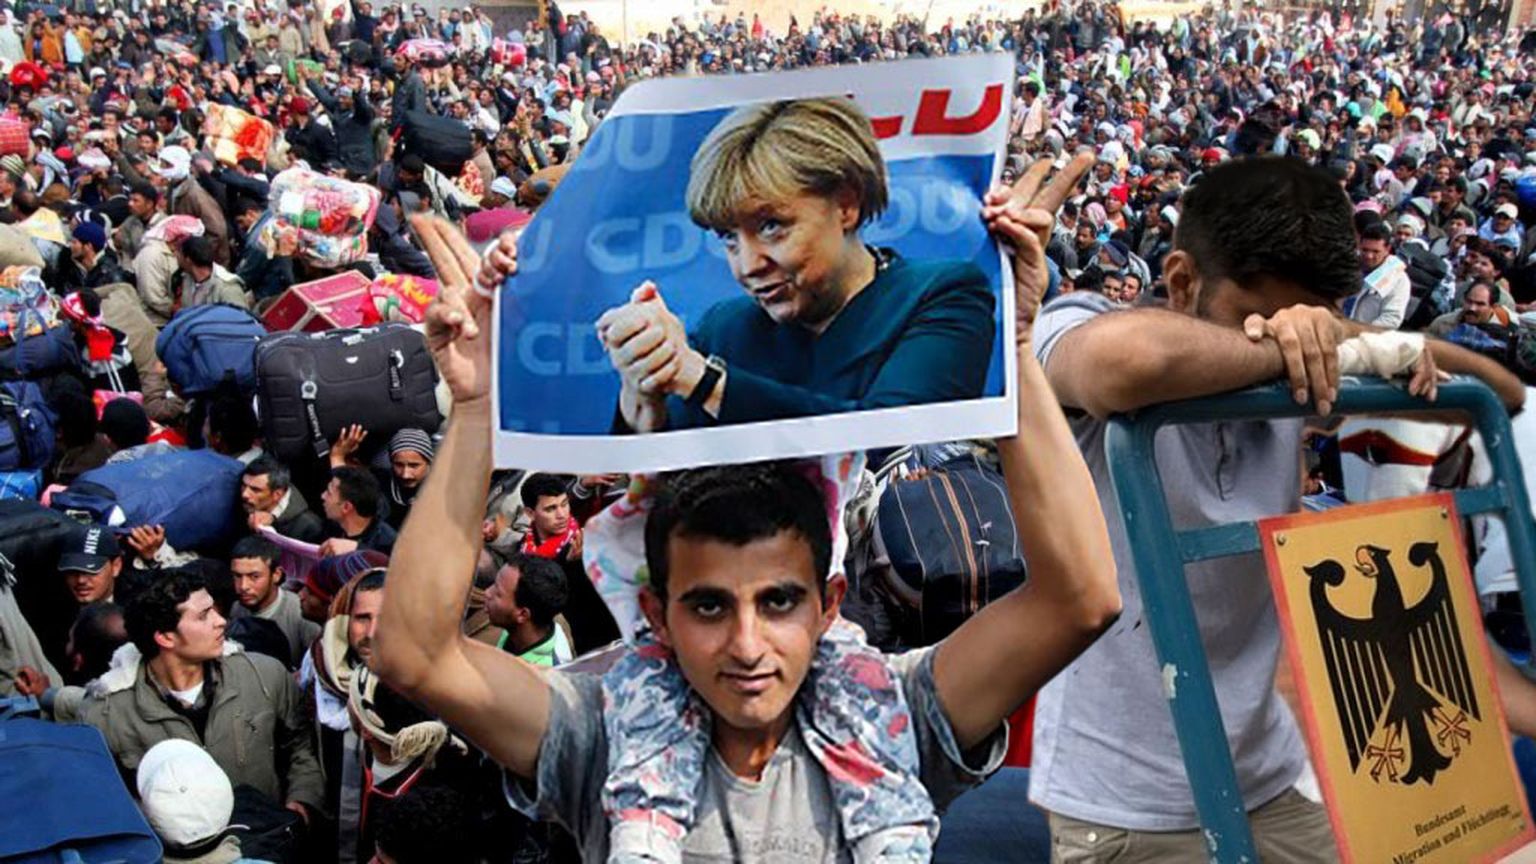 Migrant Angela Merkeli portreega. Foto on illustratiivne.